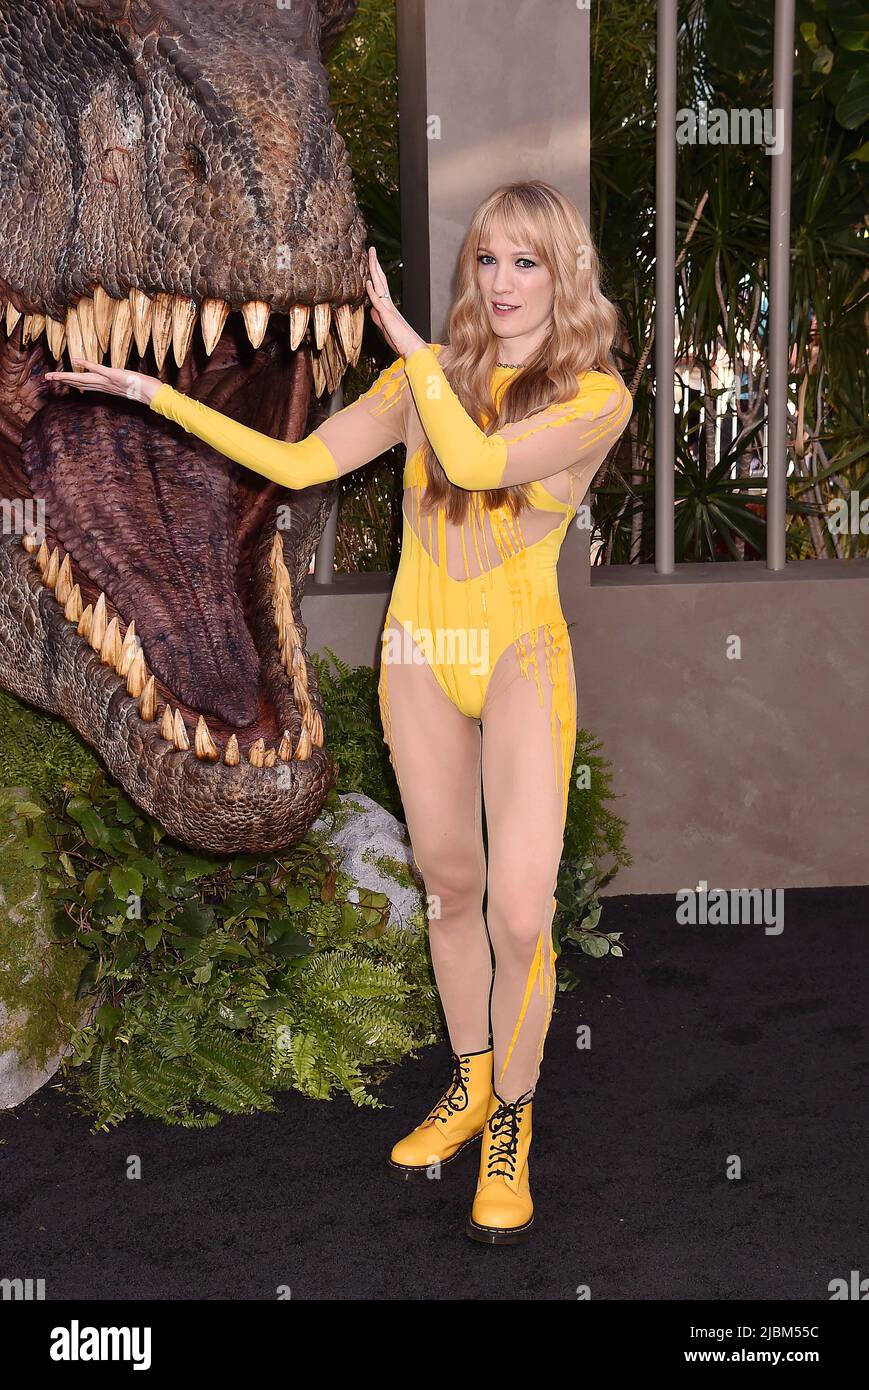 HOLLYWOOD, CA - GIUGNO 06: Emily Carmichael partecipa alla prima di Los Angeles di Universal Pictures' 'Jurassic World Dominion' al TCL Chinese Theatre Foto Stock